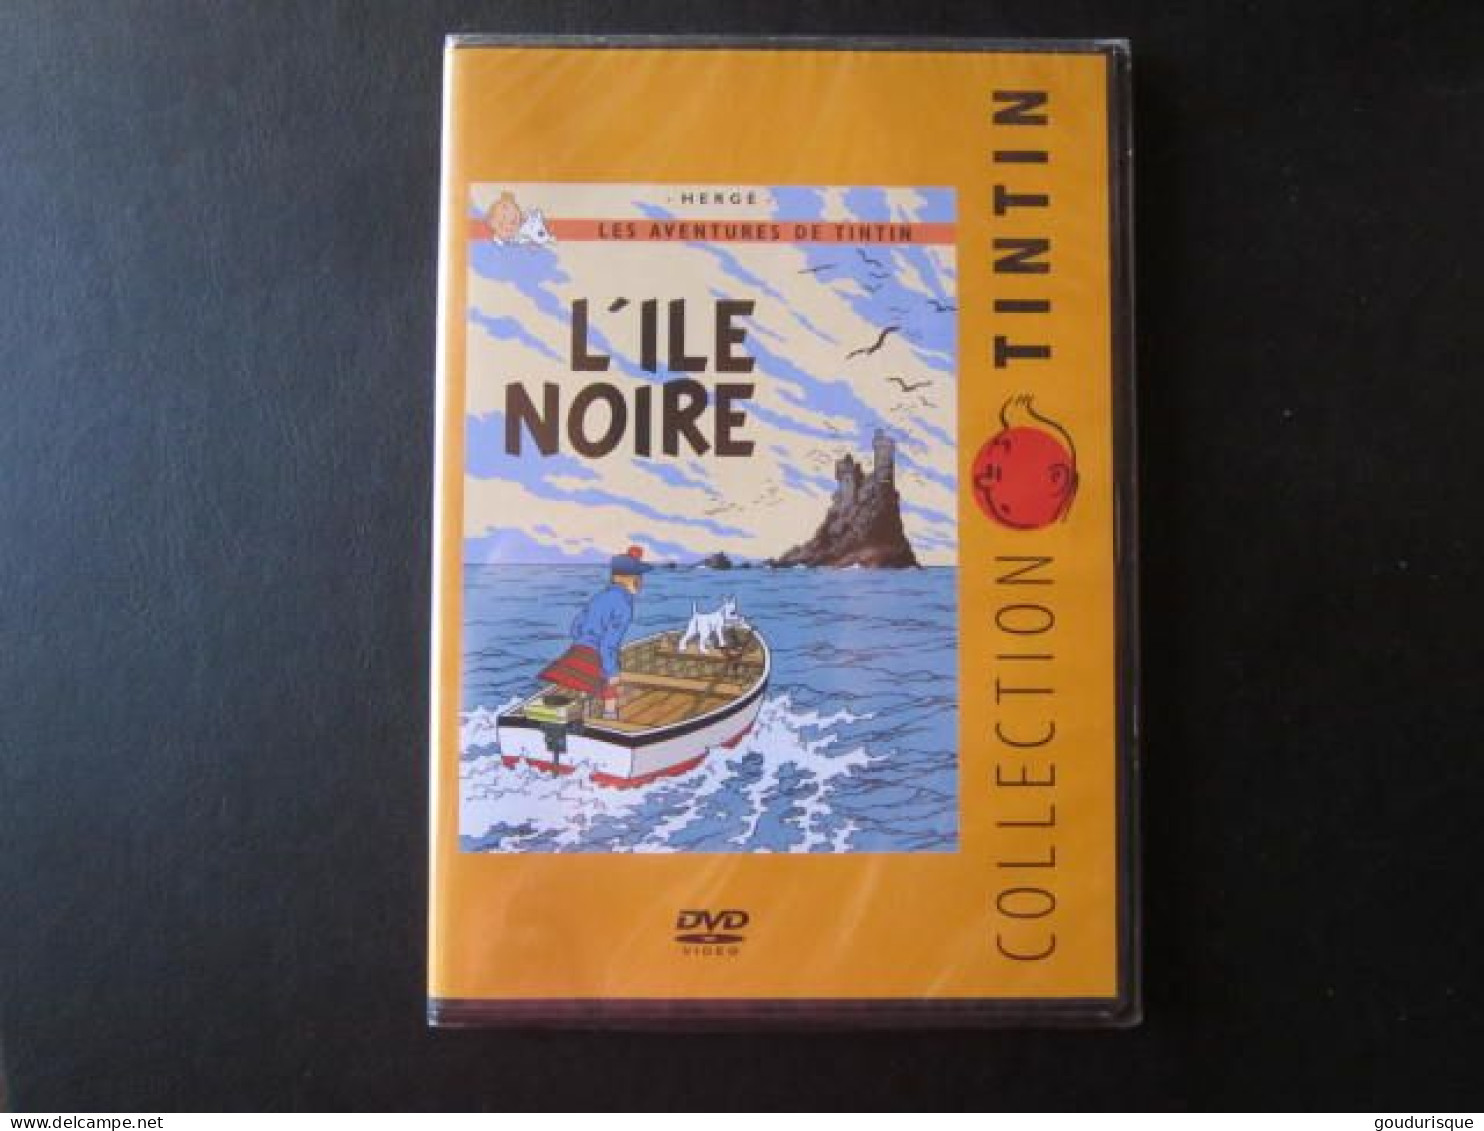 TINTIN DVD L'ILE NOIRE - Tintin